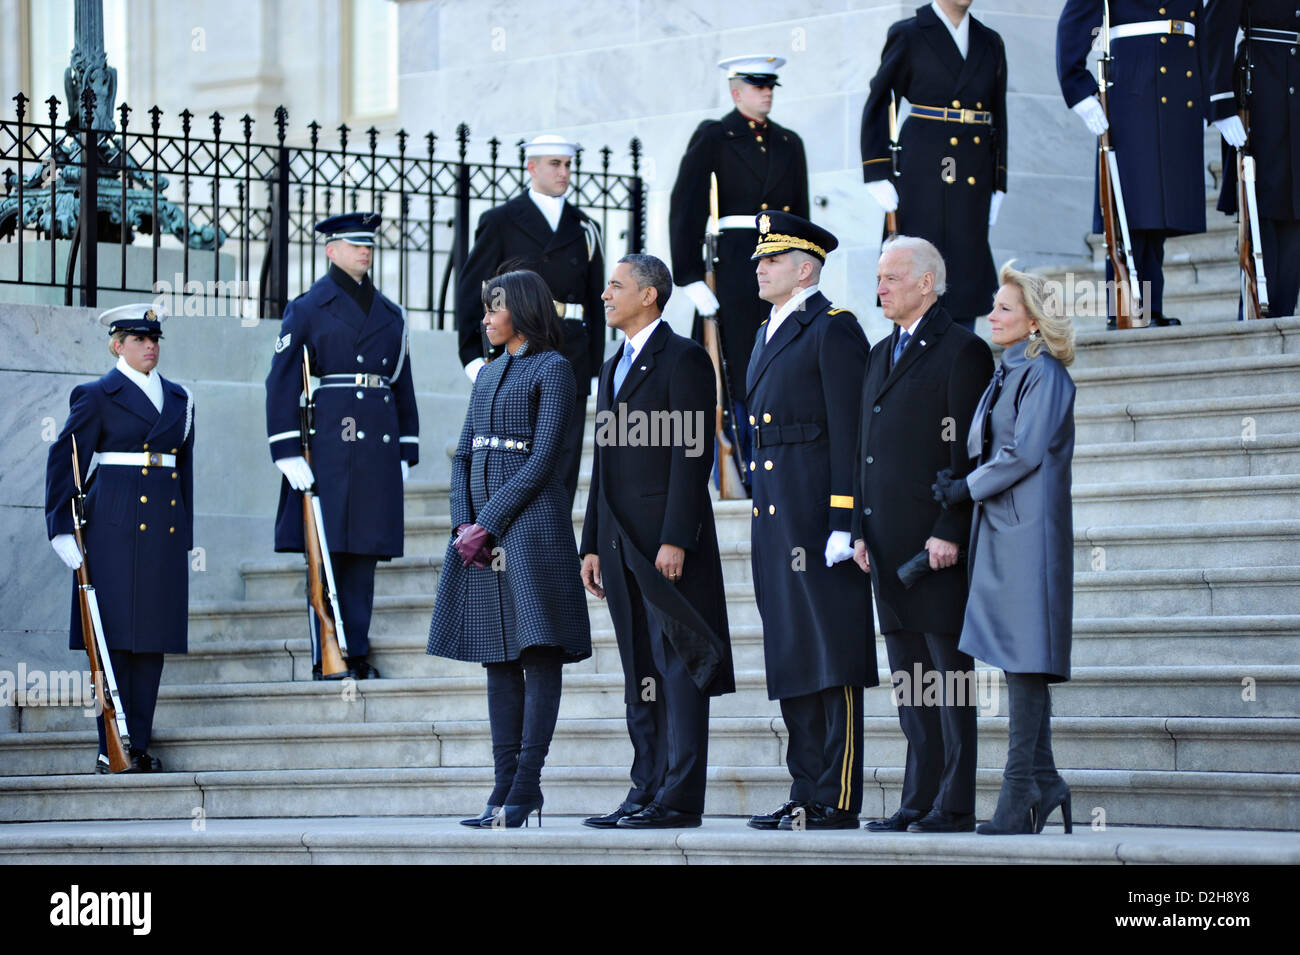 US Präsident Barack Obama und First Lady Michelle Obama, Vize-Präsident Joe Biden, Dr. Jill Biden Generalmajor Michael S. Linnington Zeuge den militärischen Pass im Rückblick auf die 57. Presidential Inauguration auf dem US Capitol 21. Januar 2013 in Washington, DC. Stockfoto